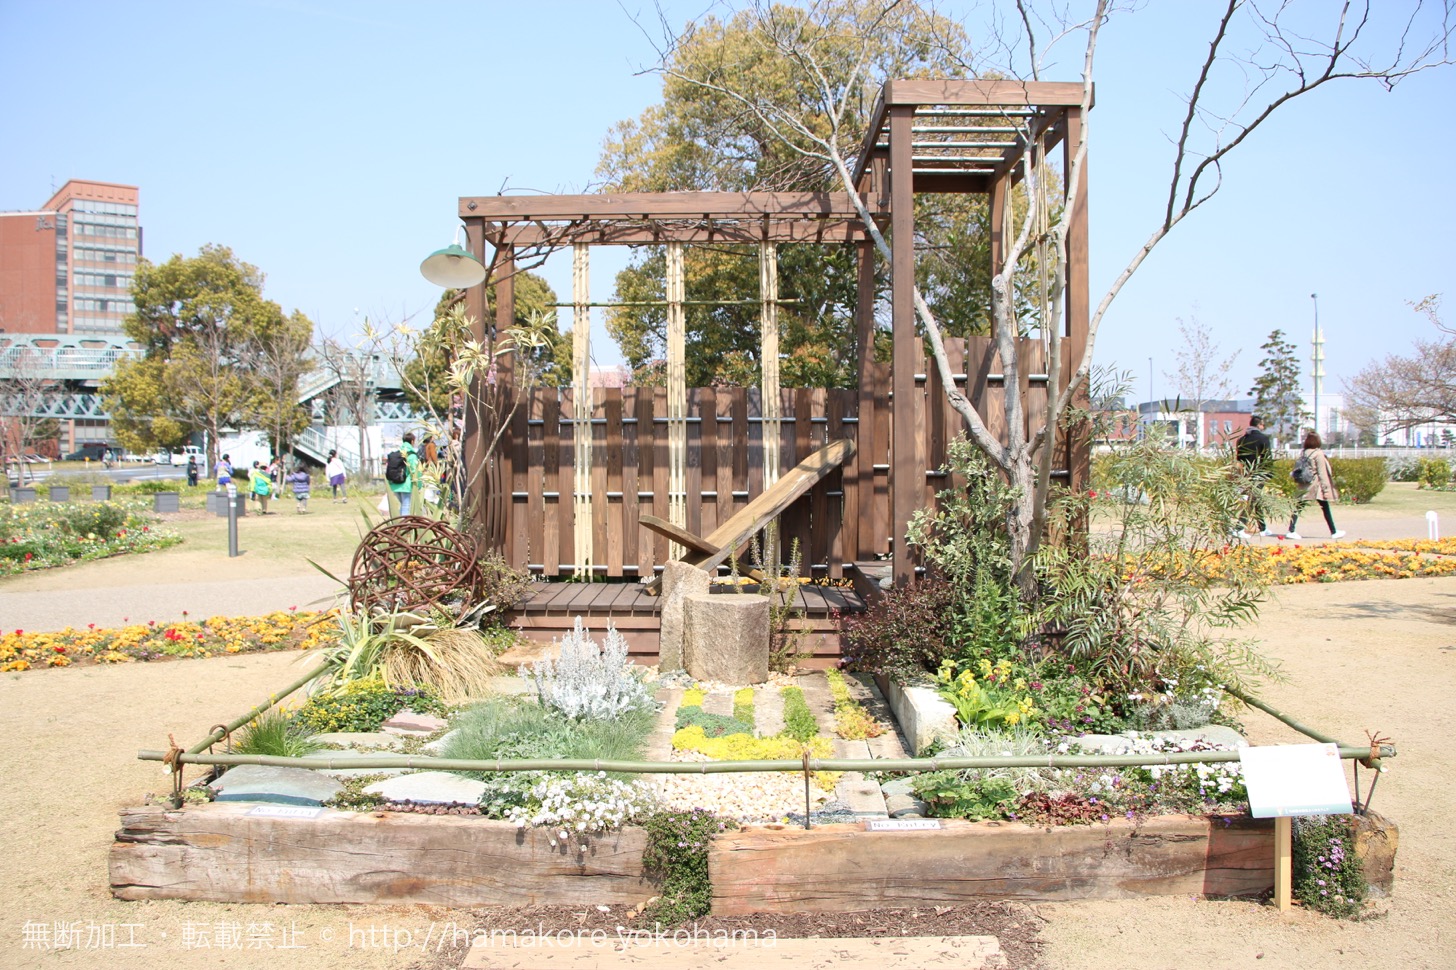 全国都市緑化横浜フェア 横浜赤レンガ倉庫周辺の庭園